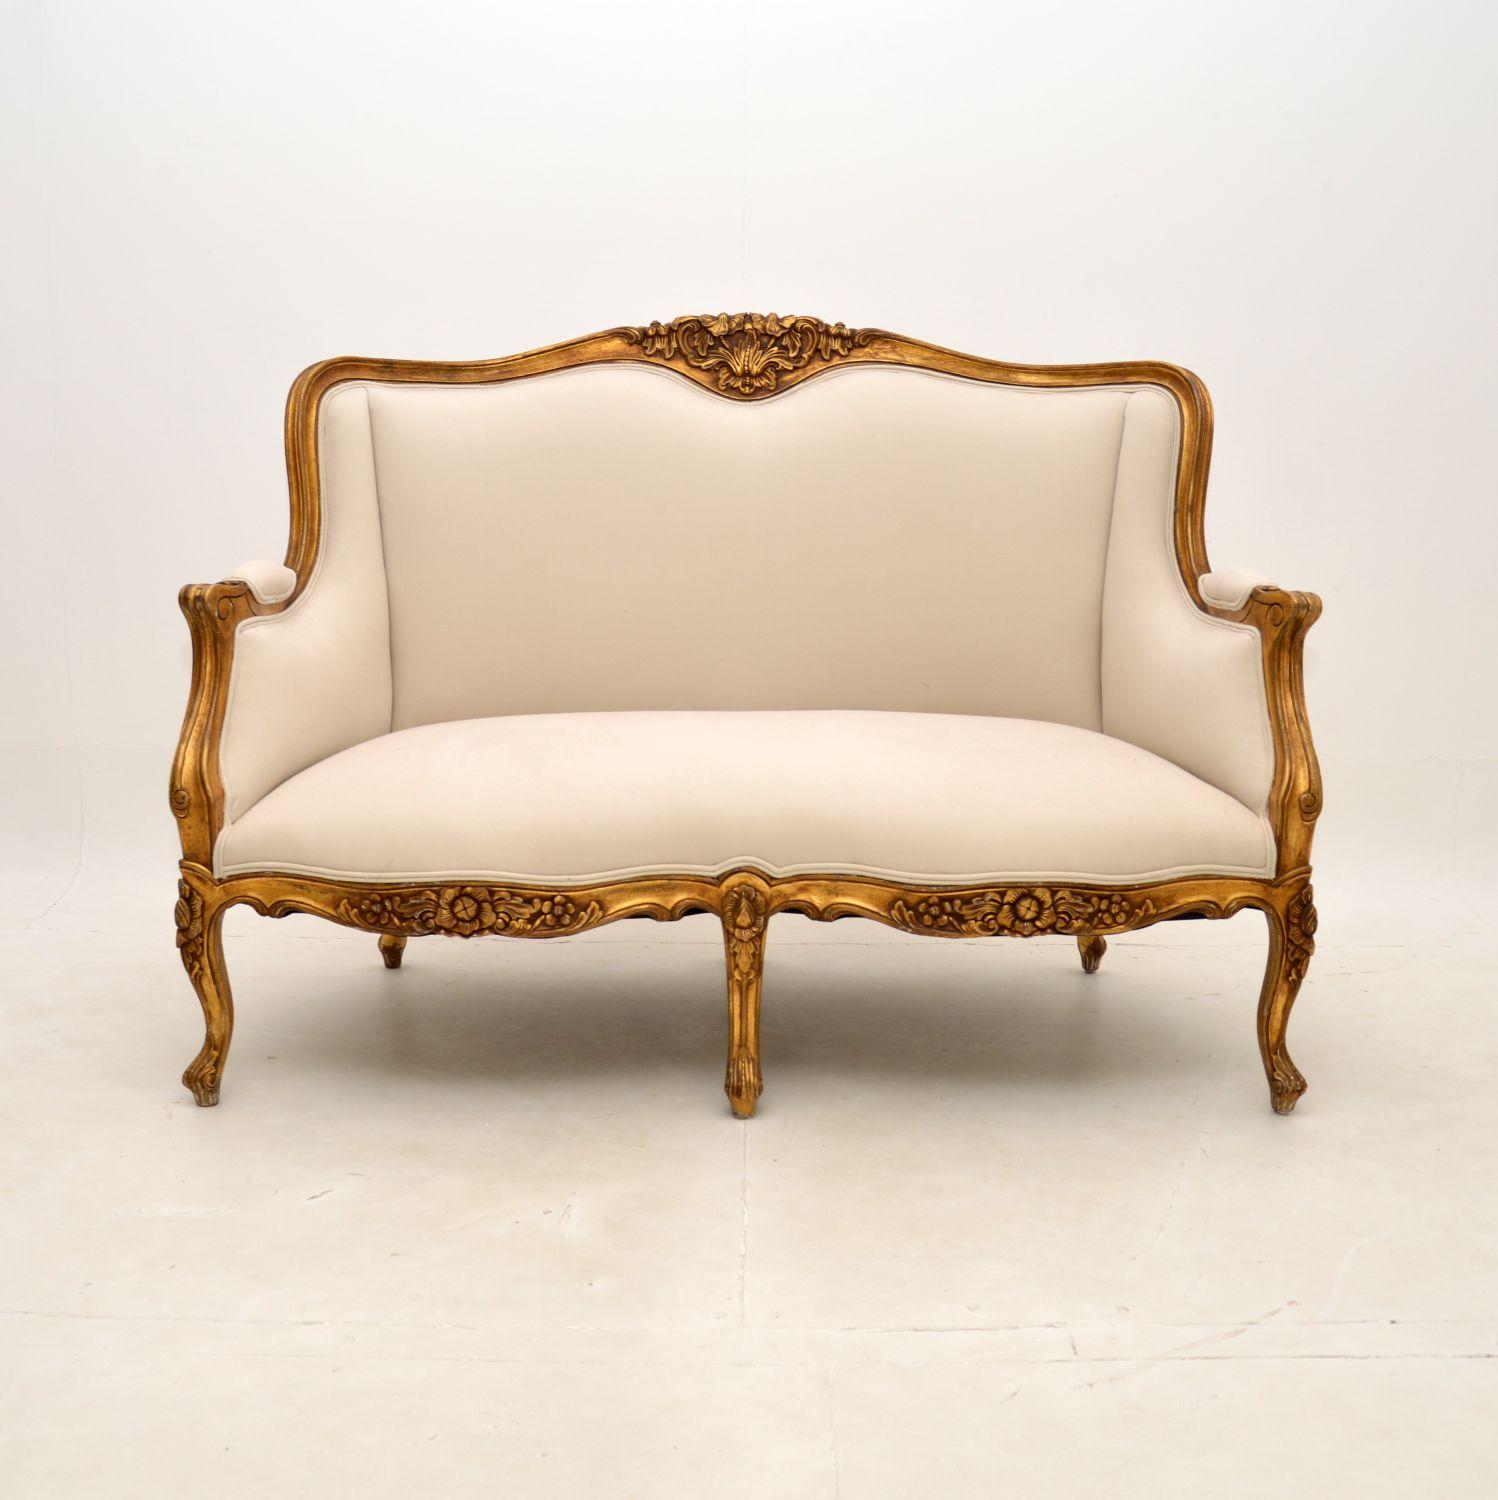 Ein atemberaubendes und hochwertiges antikes französisches Sofa im Louis-Stil aus vergoldetem Holz, etwa aus den 1930er Jahren.

Es ist wunderschön gemacht, mit einer herrlichen Form und schönen Schnitzereien. Der vergoldete Holzrahmen hat einige